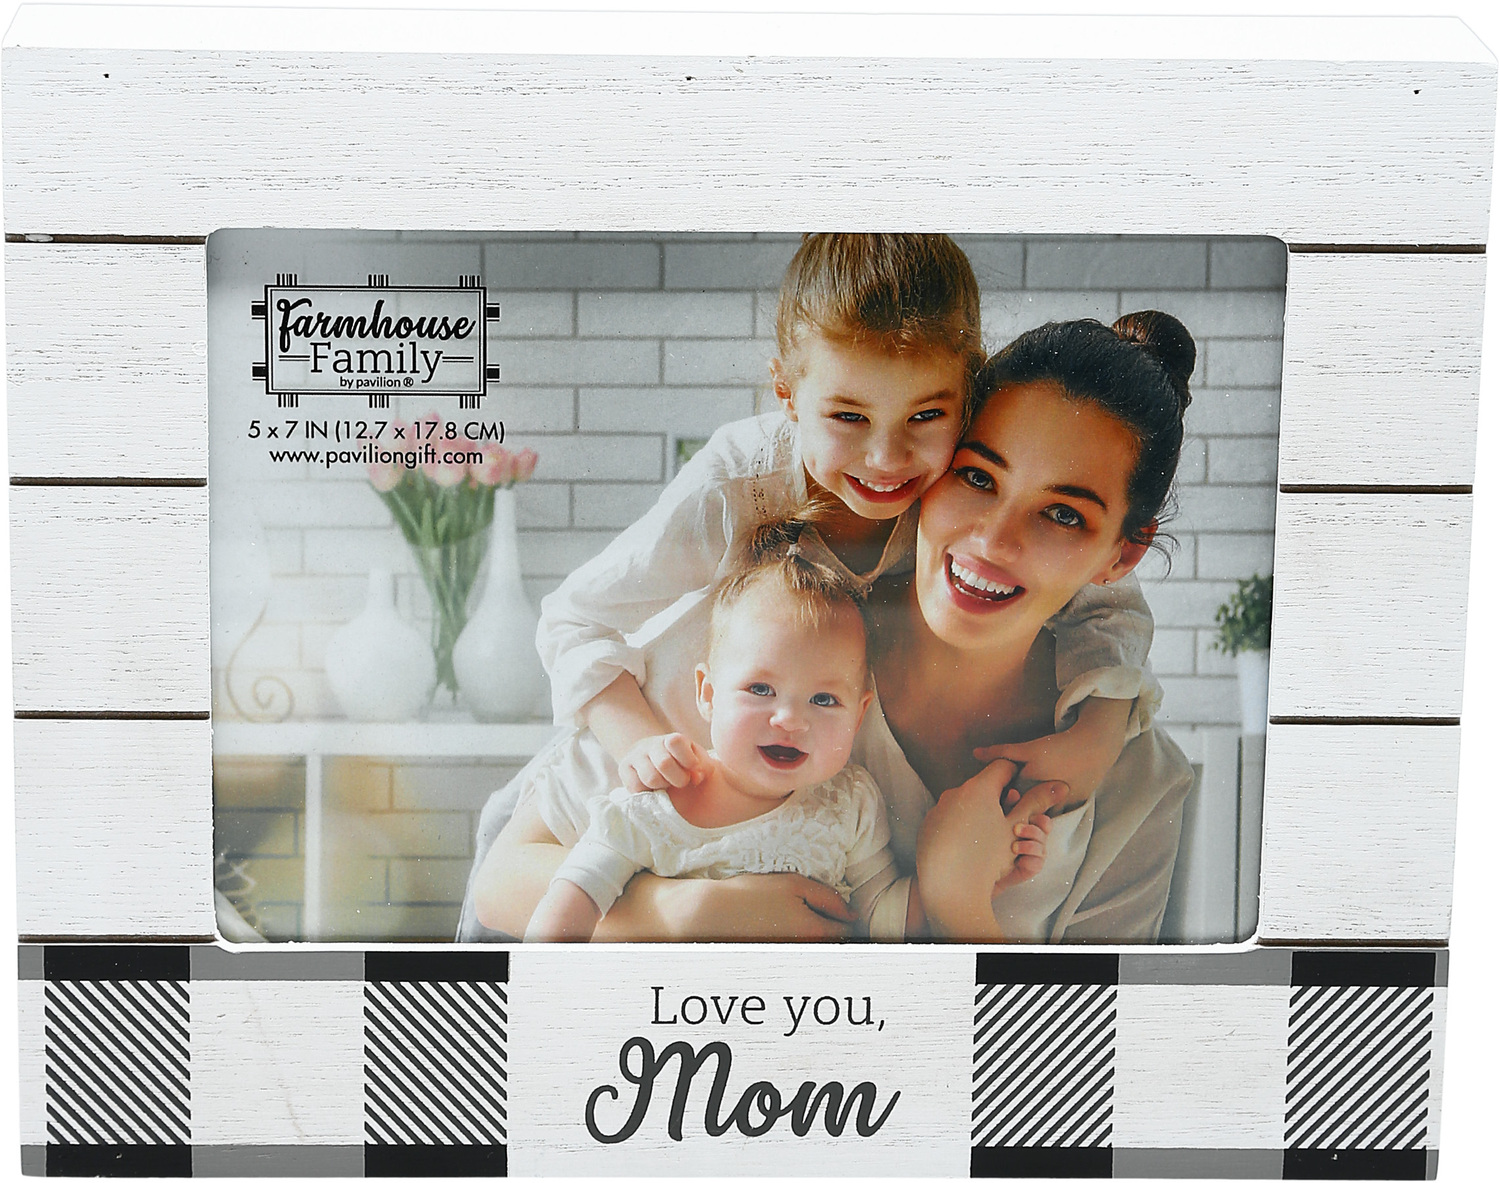 Mom by Farmhouse Family - Mom - 9" x 7.25" Frame
(Holds 7" x 5" Photo)